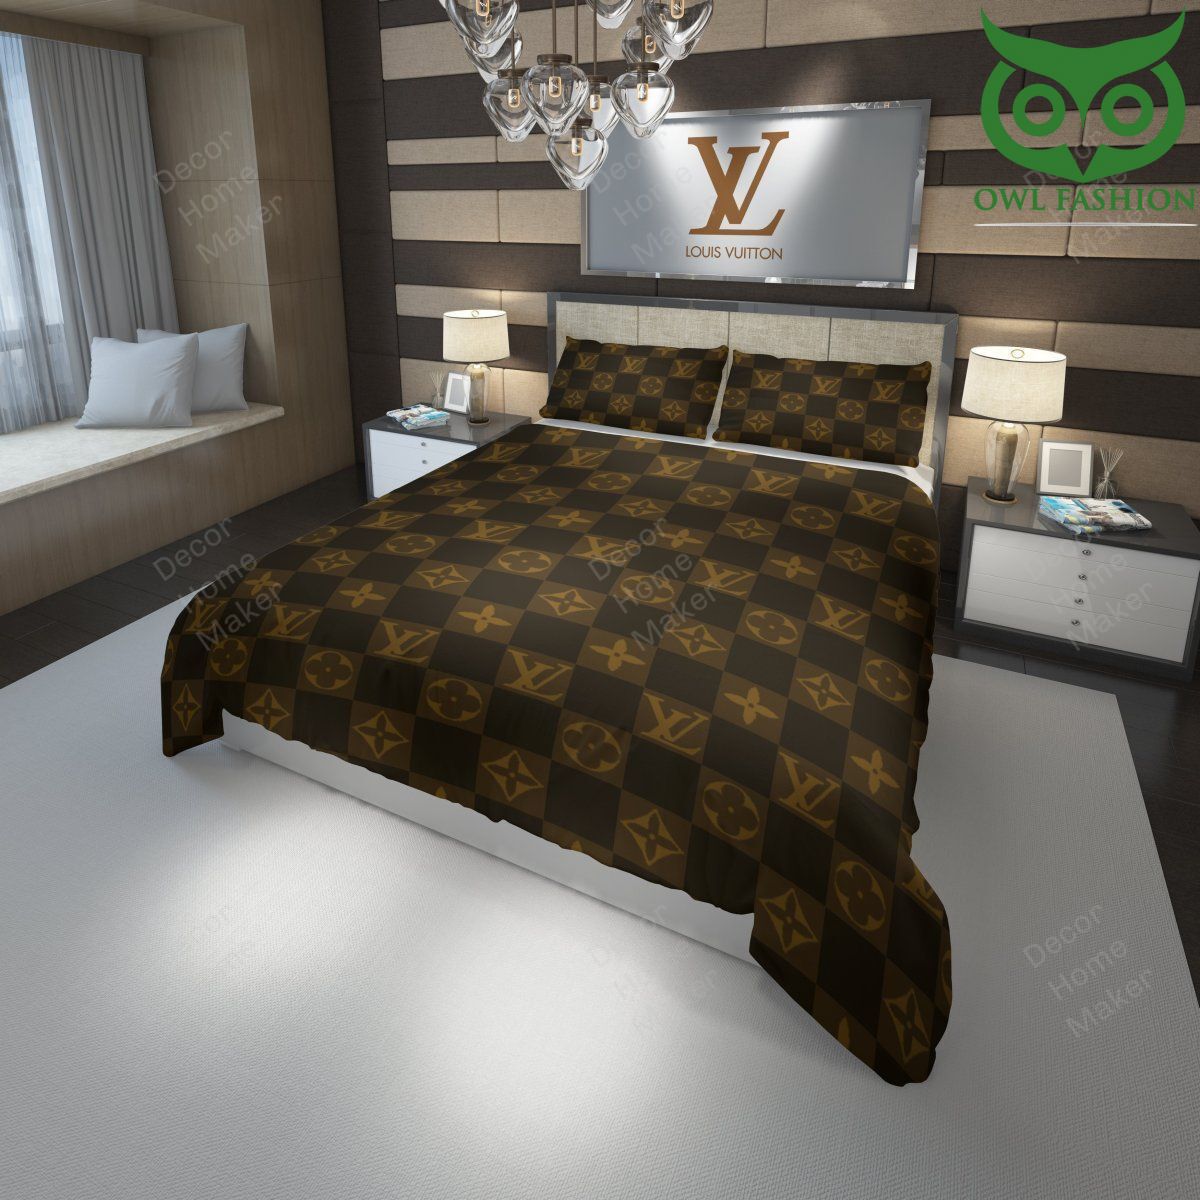 146 Brown Louis Vuitton logo caro pattern bedding set